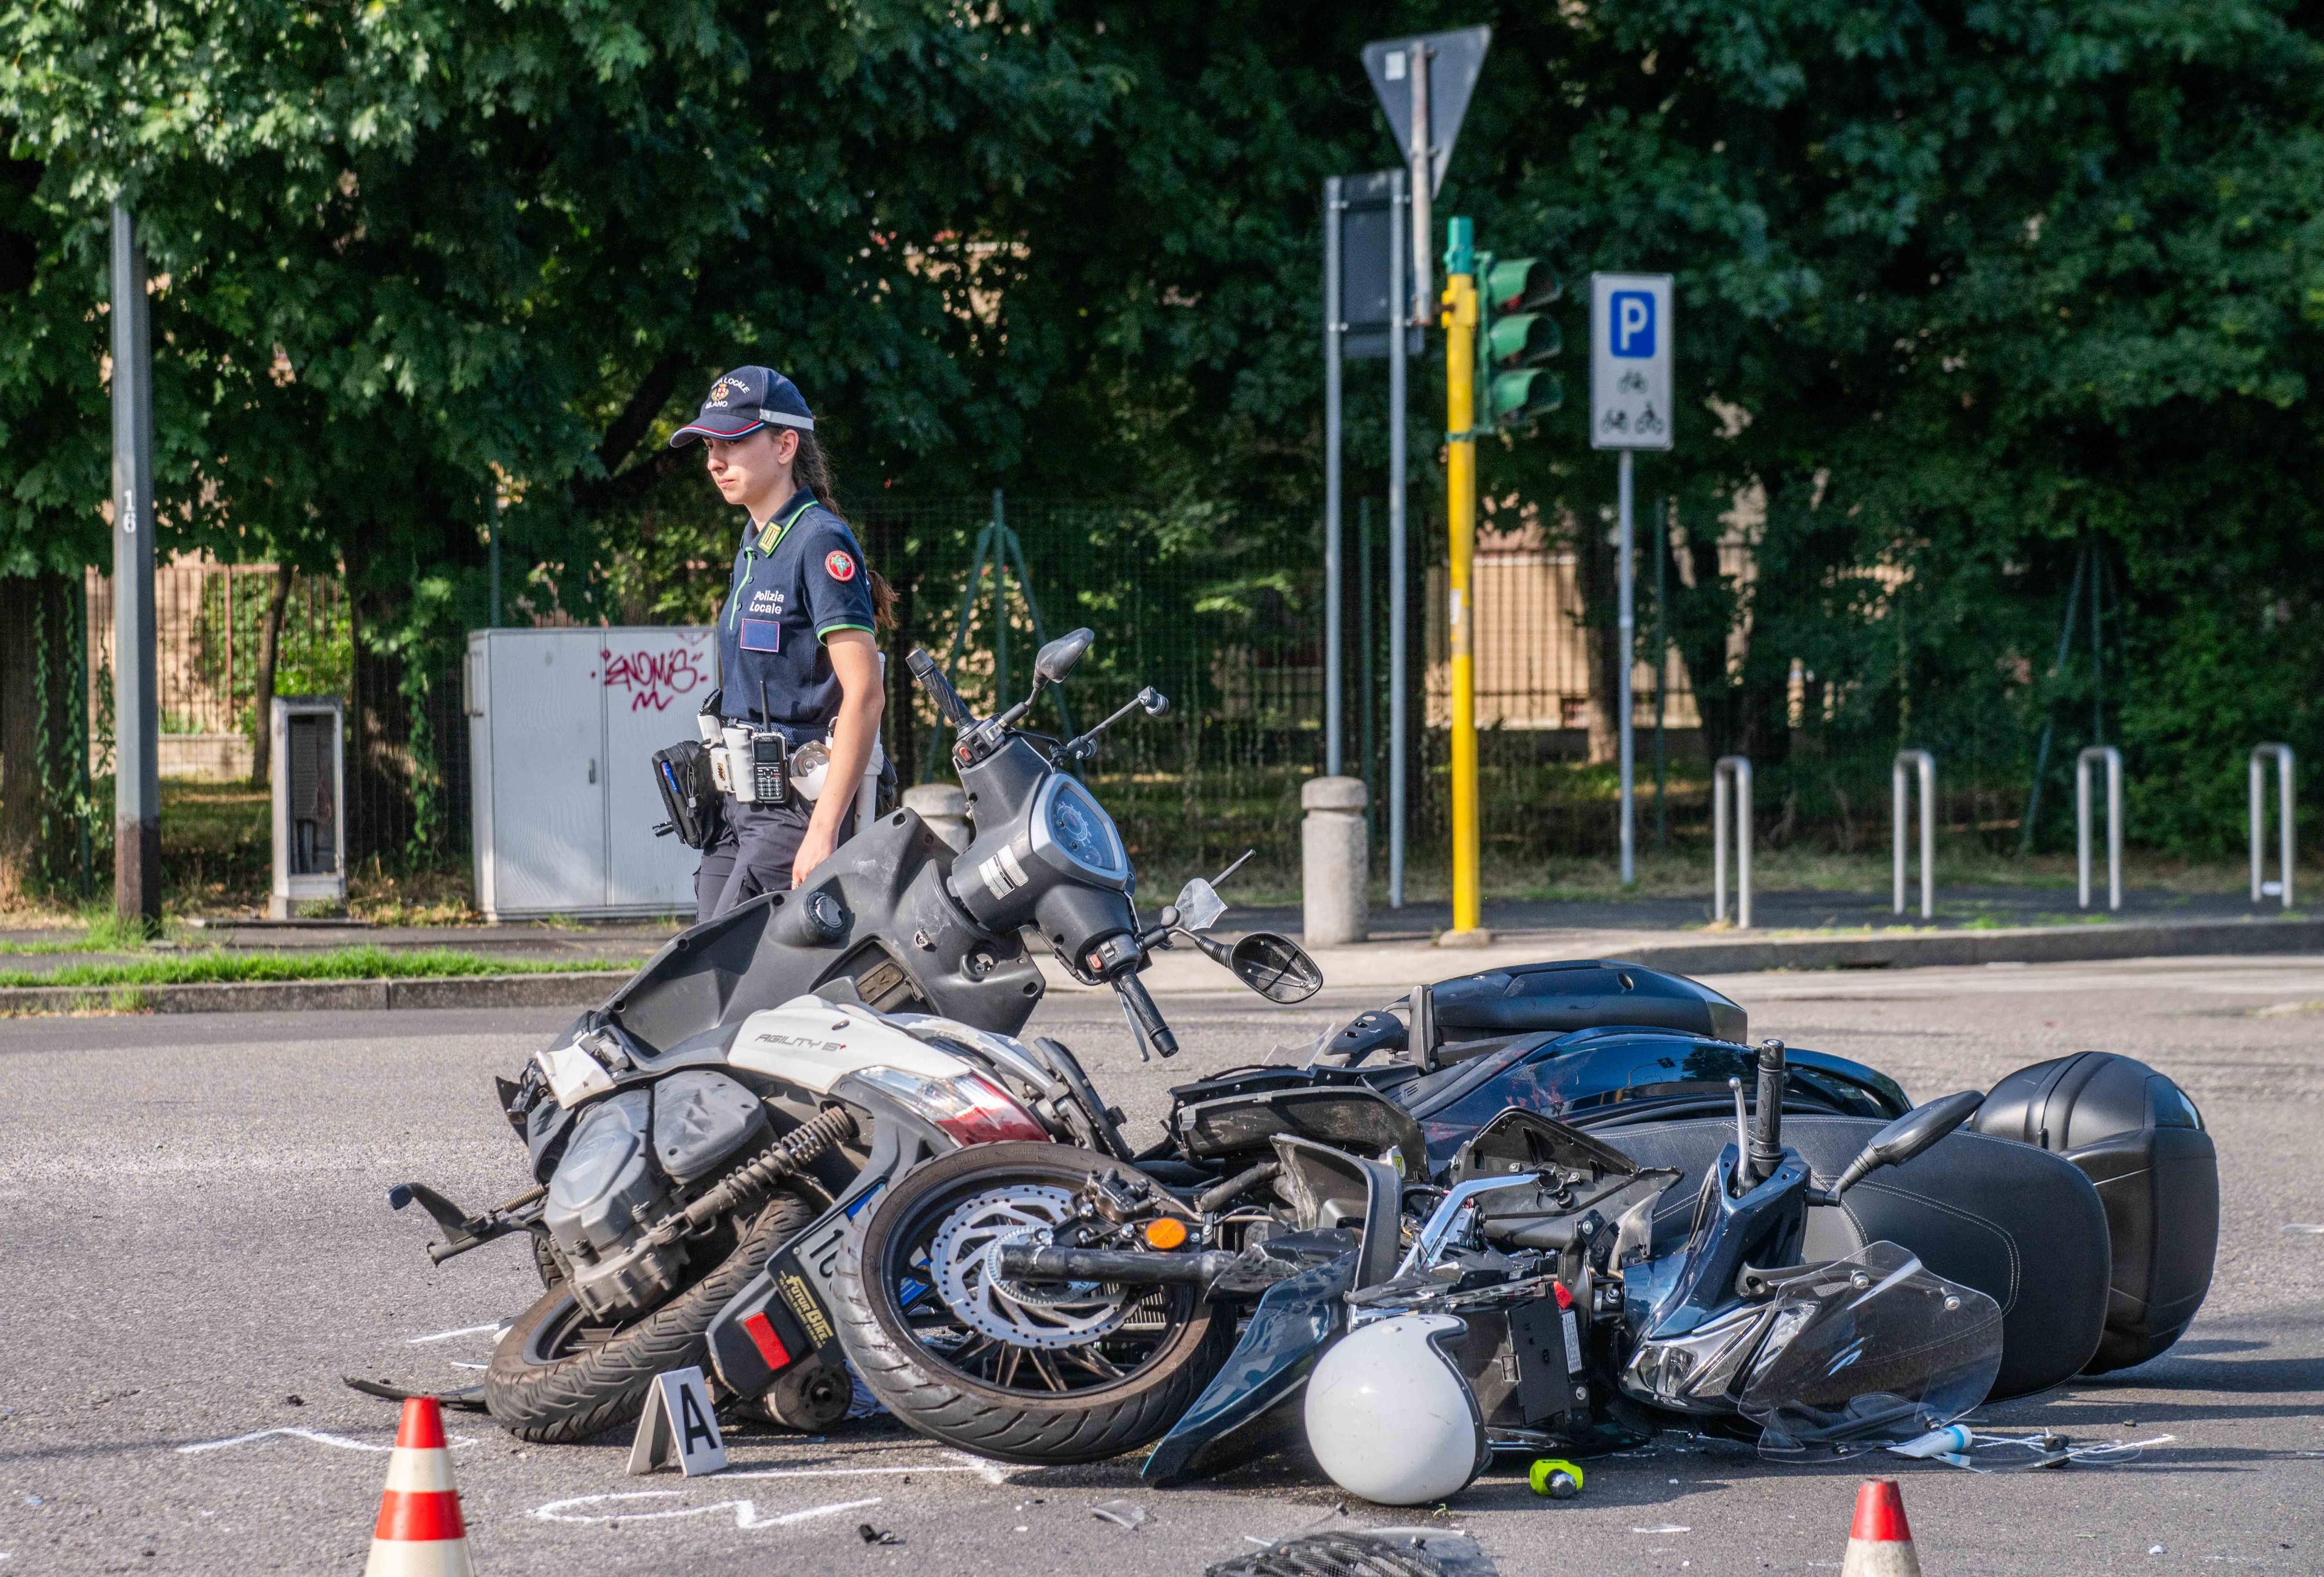 Incidente tra due scooter in via Bisceglie: un motociclista si alza e scappa a piedi, l’altro è grave in ospedale